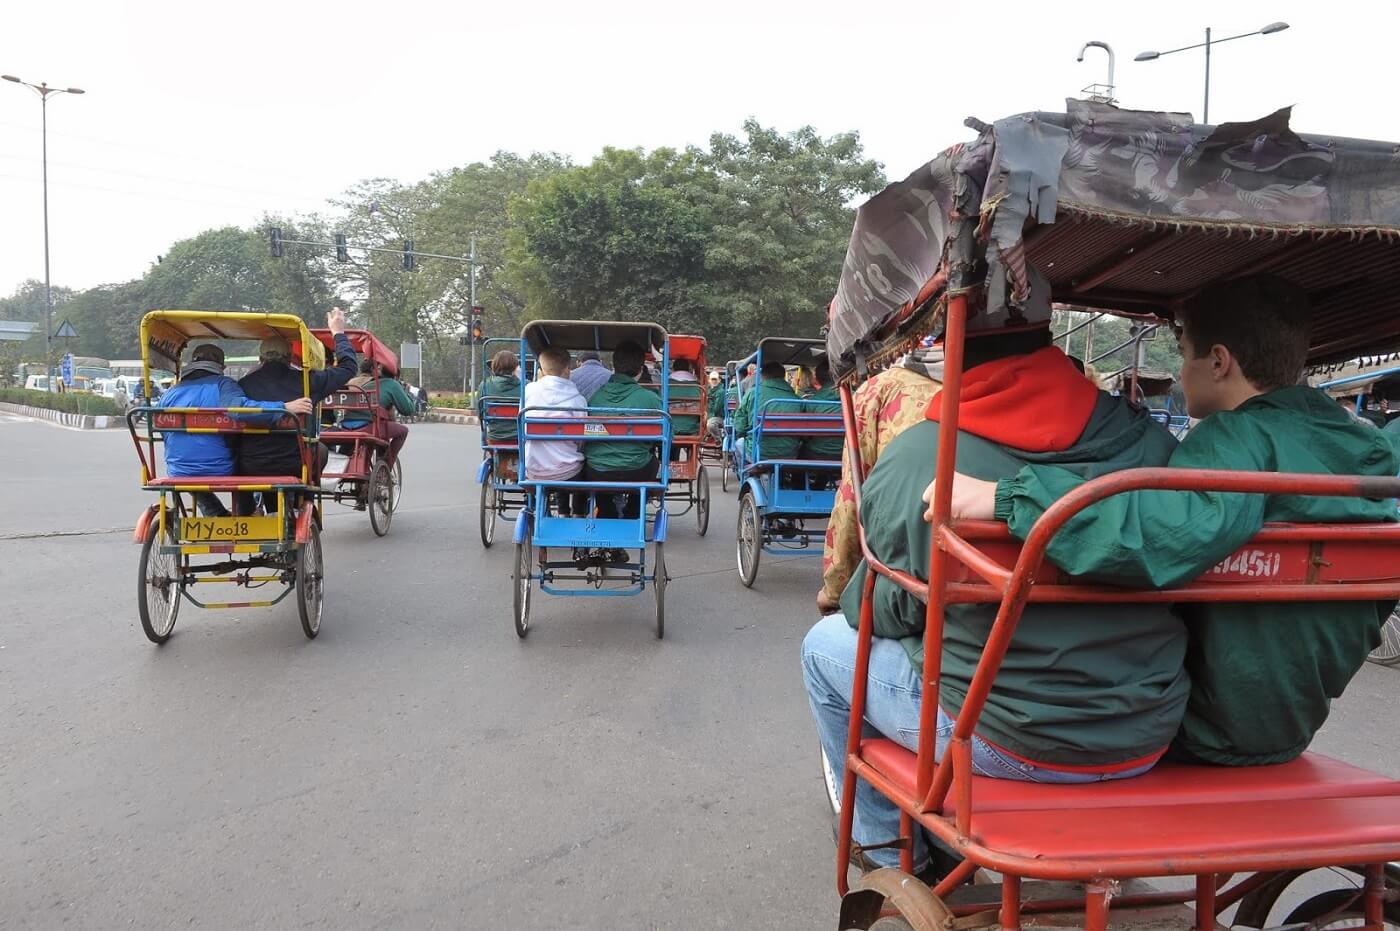 Morning Ride in Delhi’s local transportation